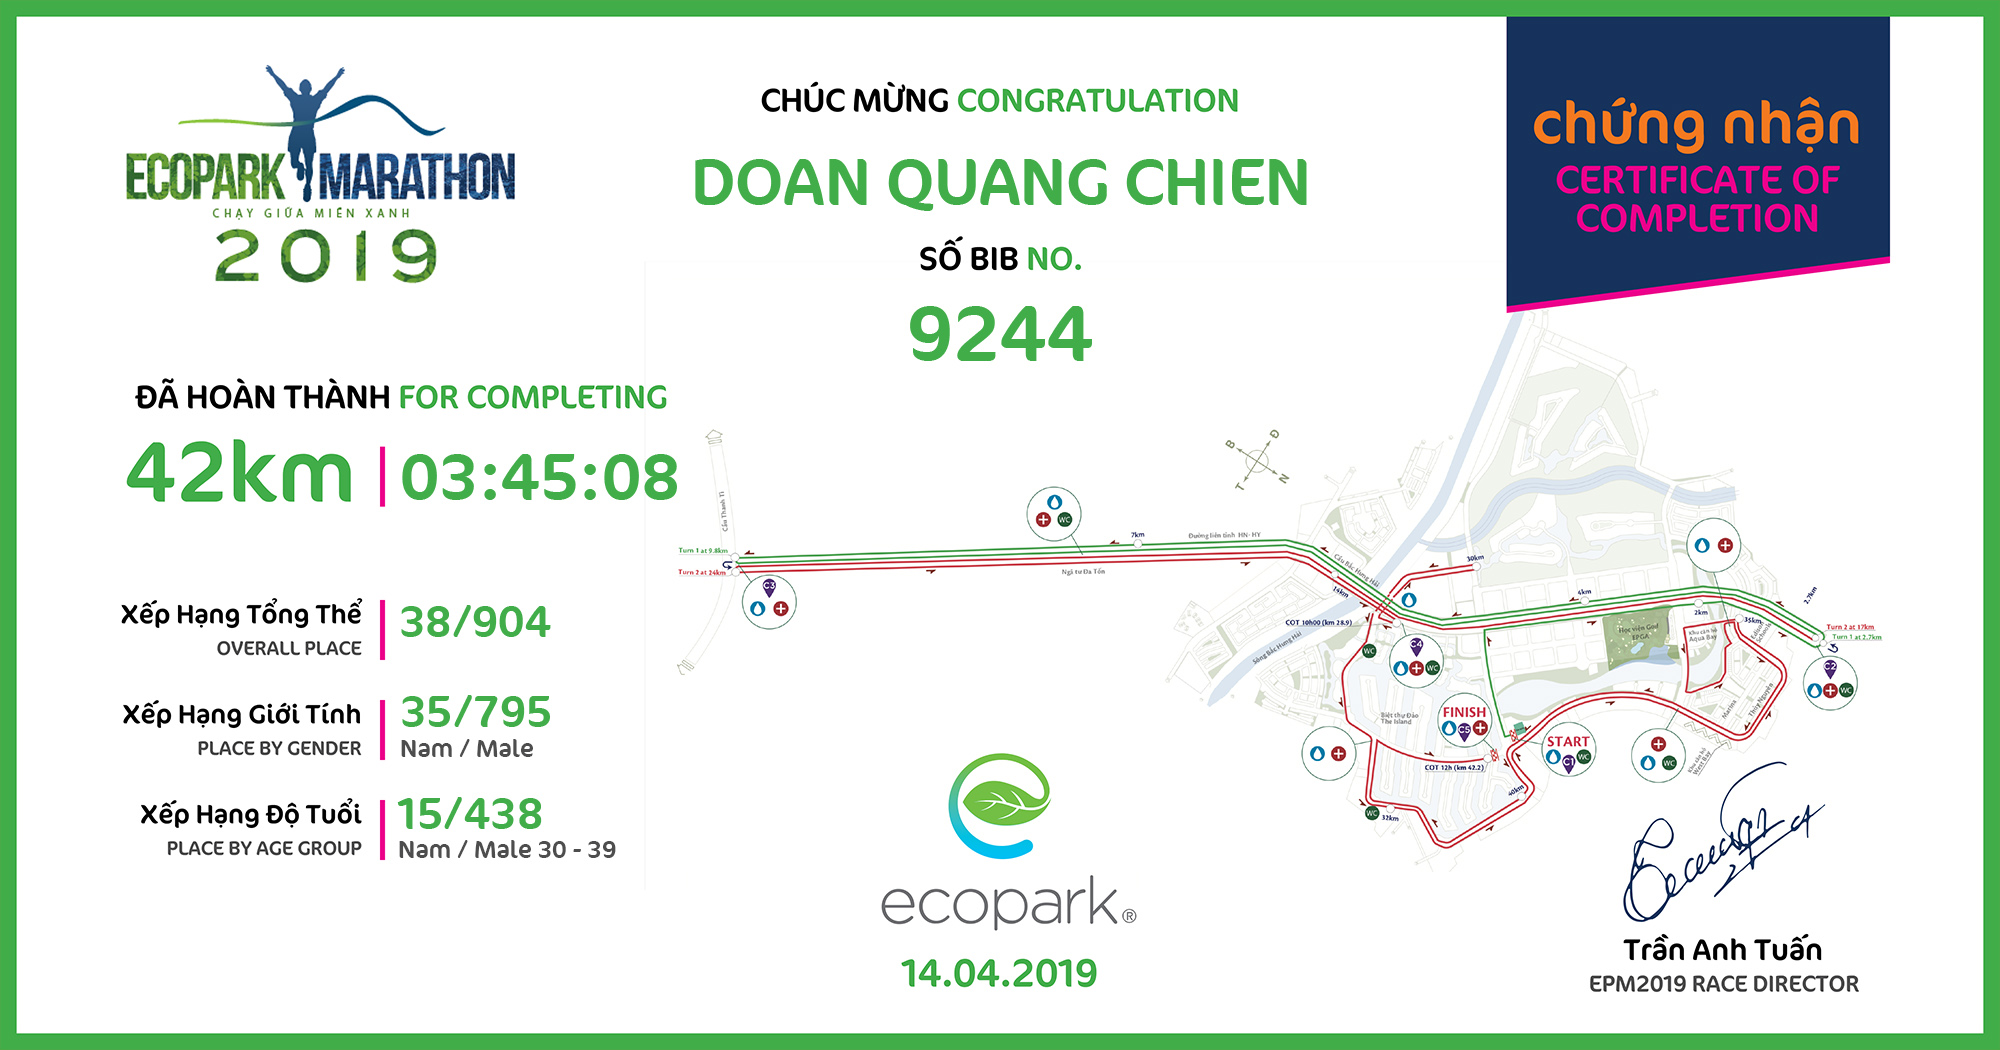 9244 - Doan Quang Chien